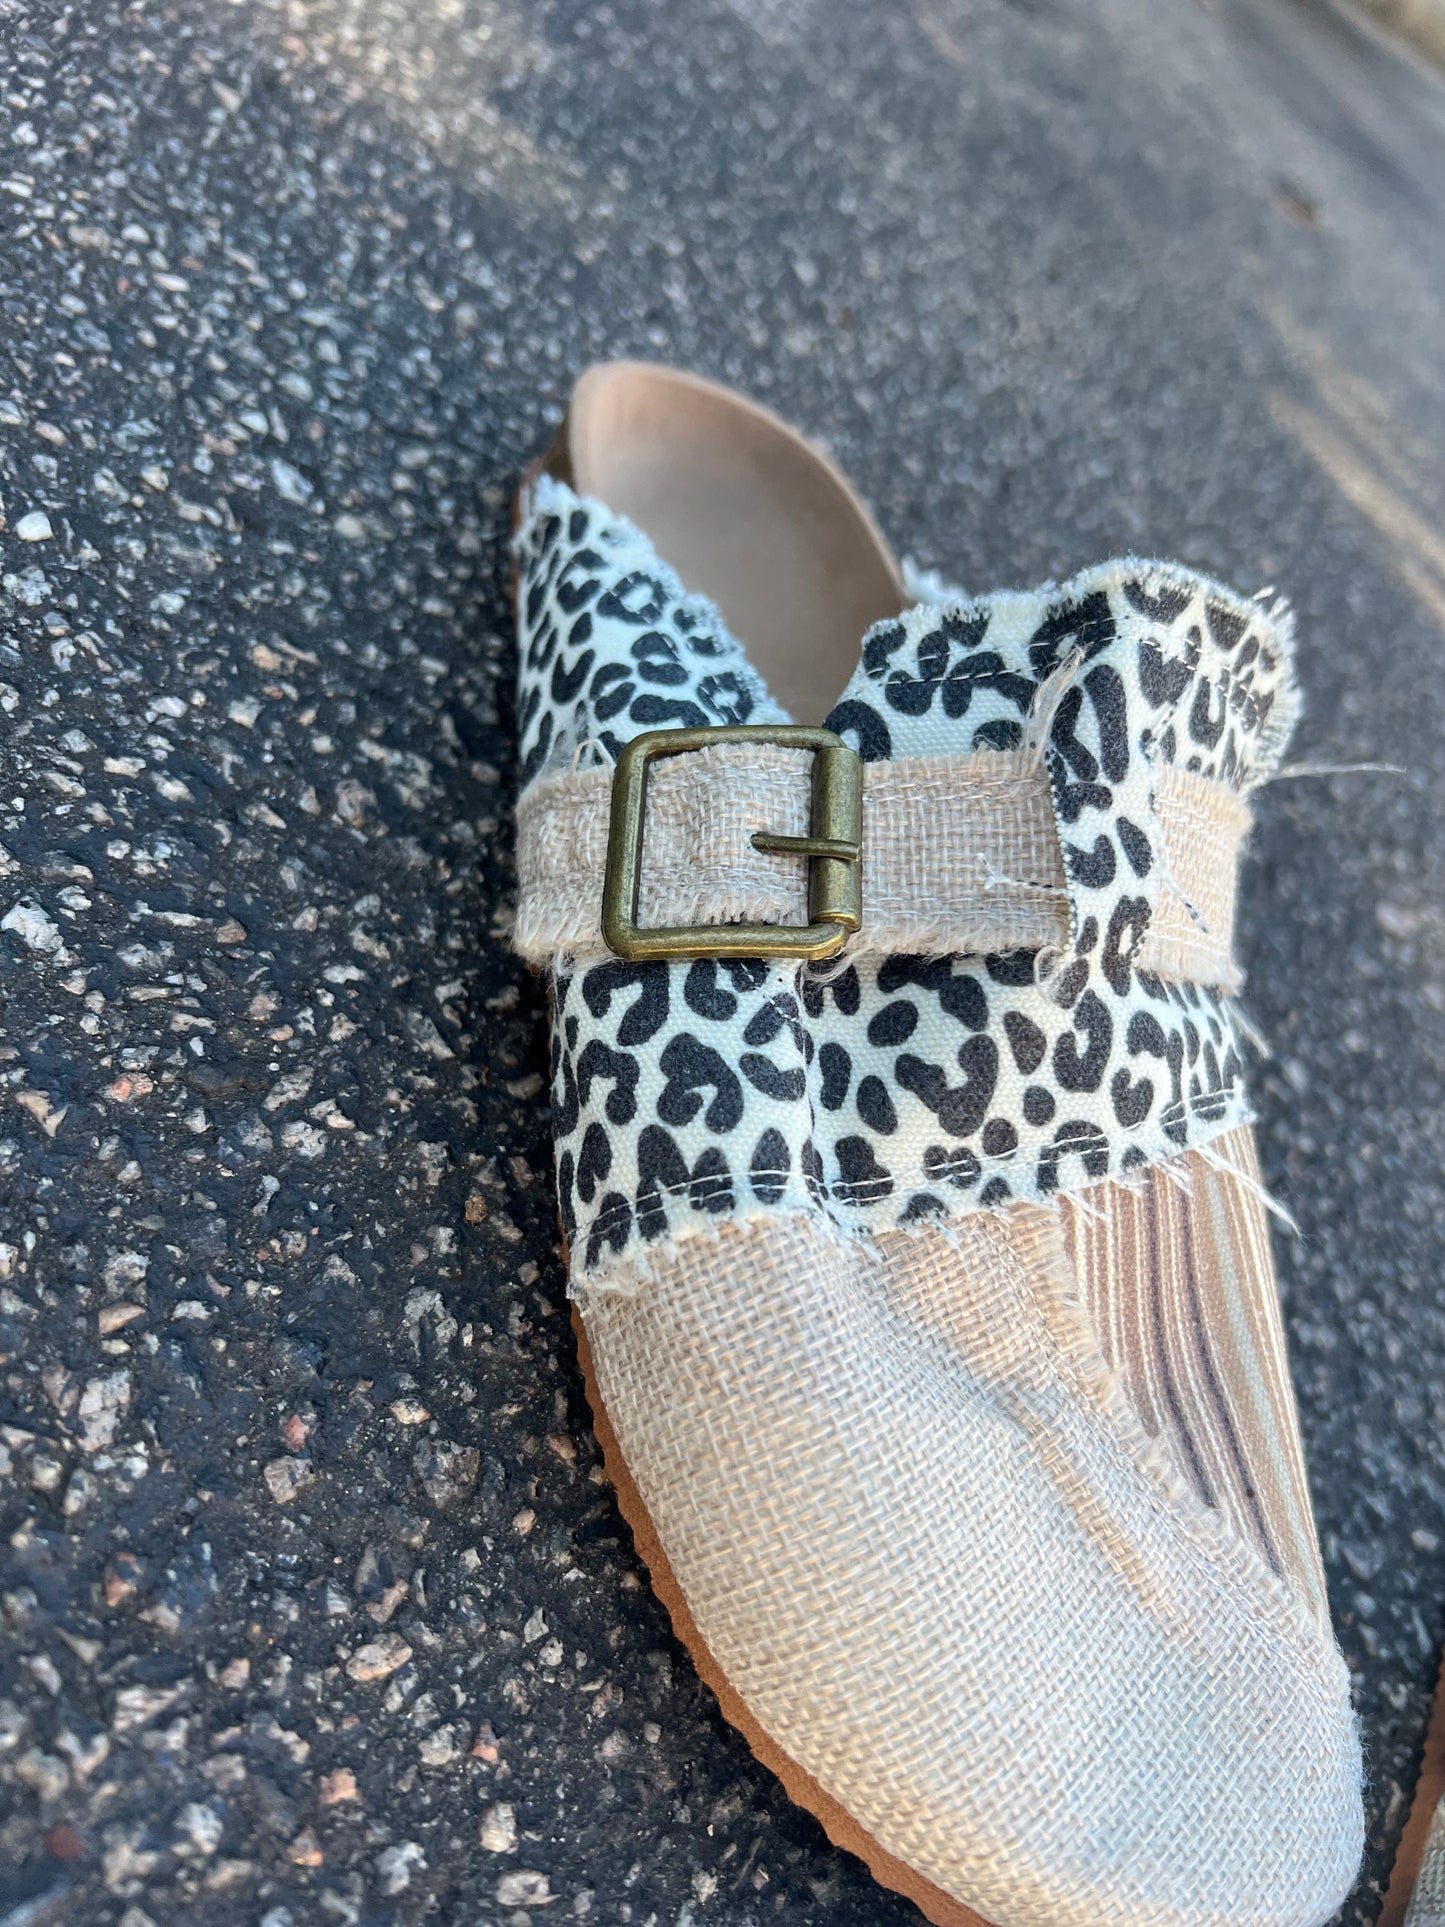 Leopard shoes